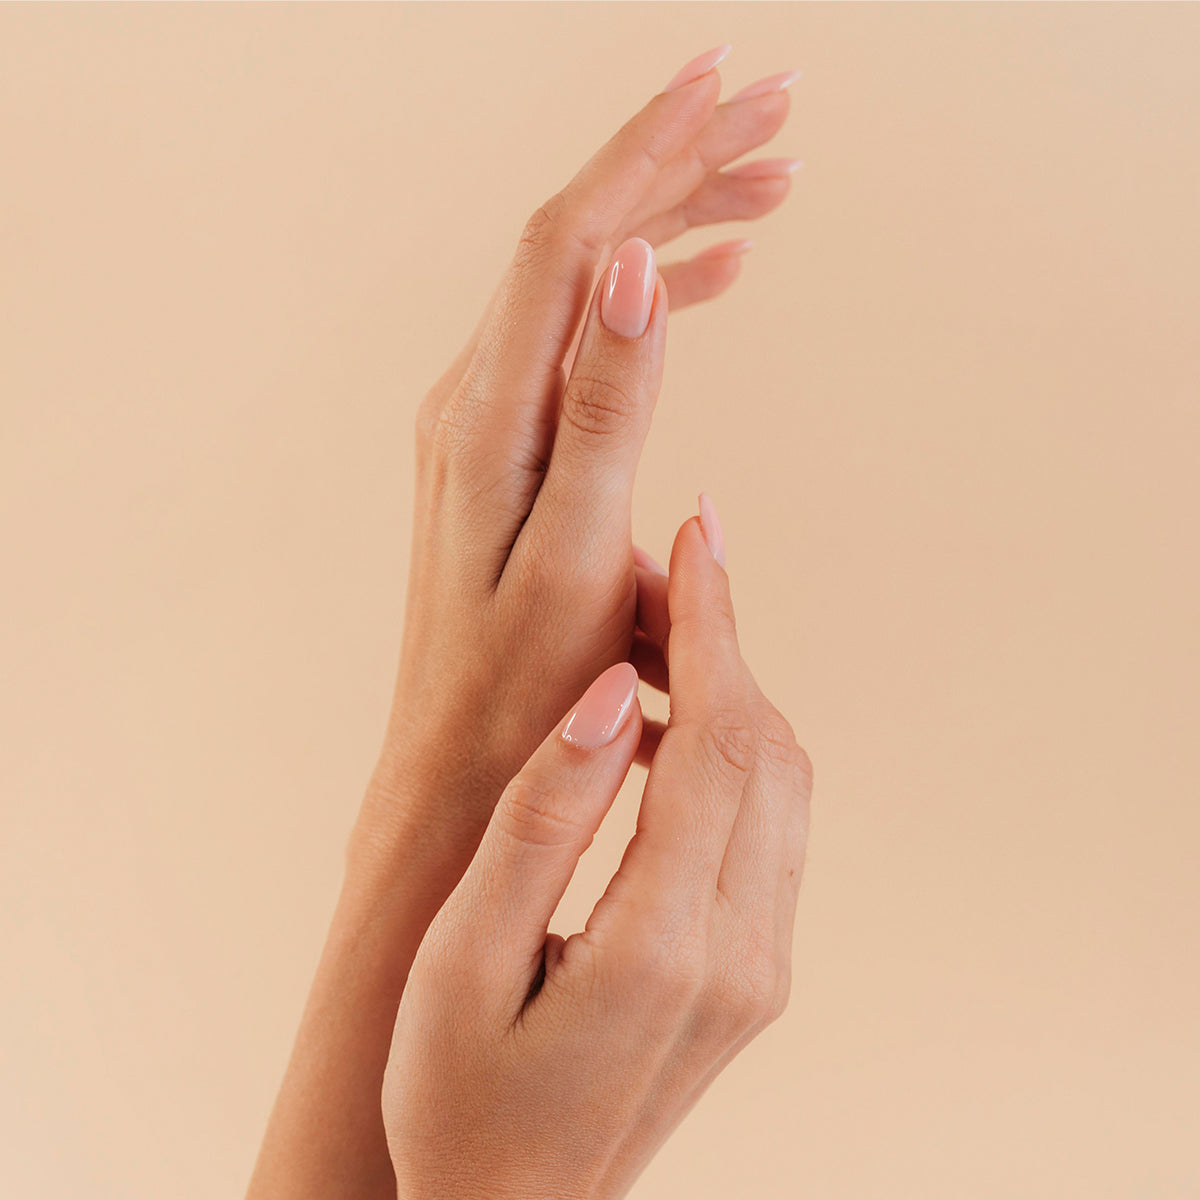 Jaki kolagen na paznokcie? Właściwości, efekty stosowania